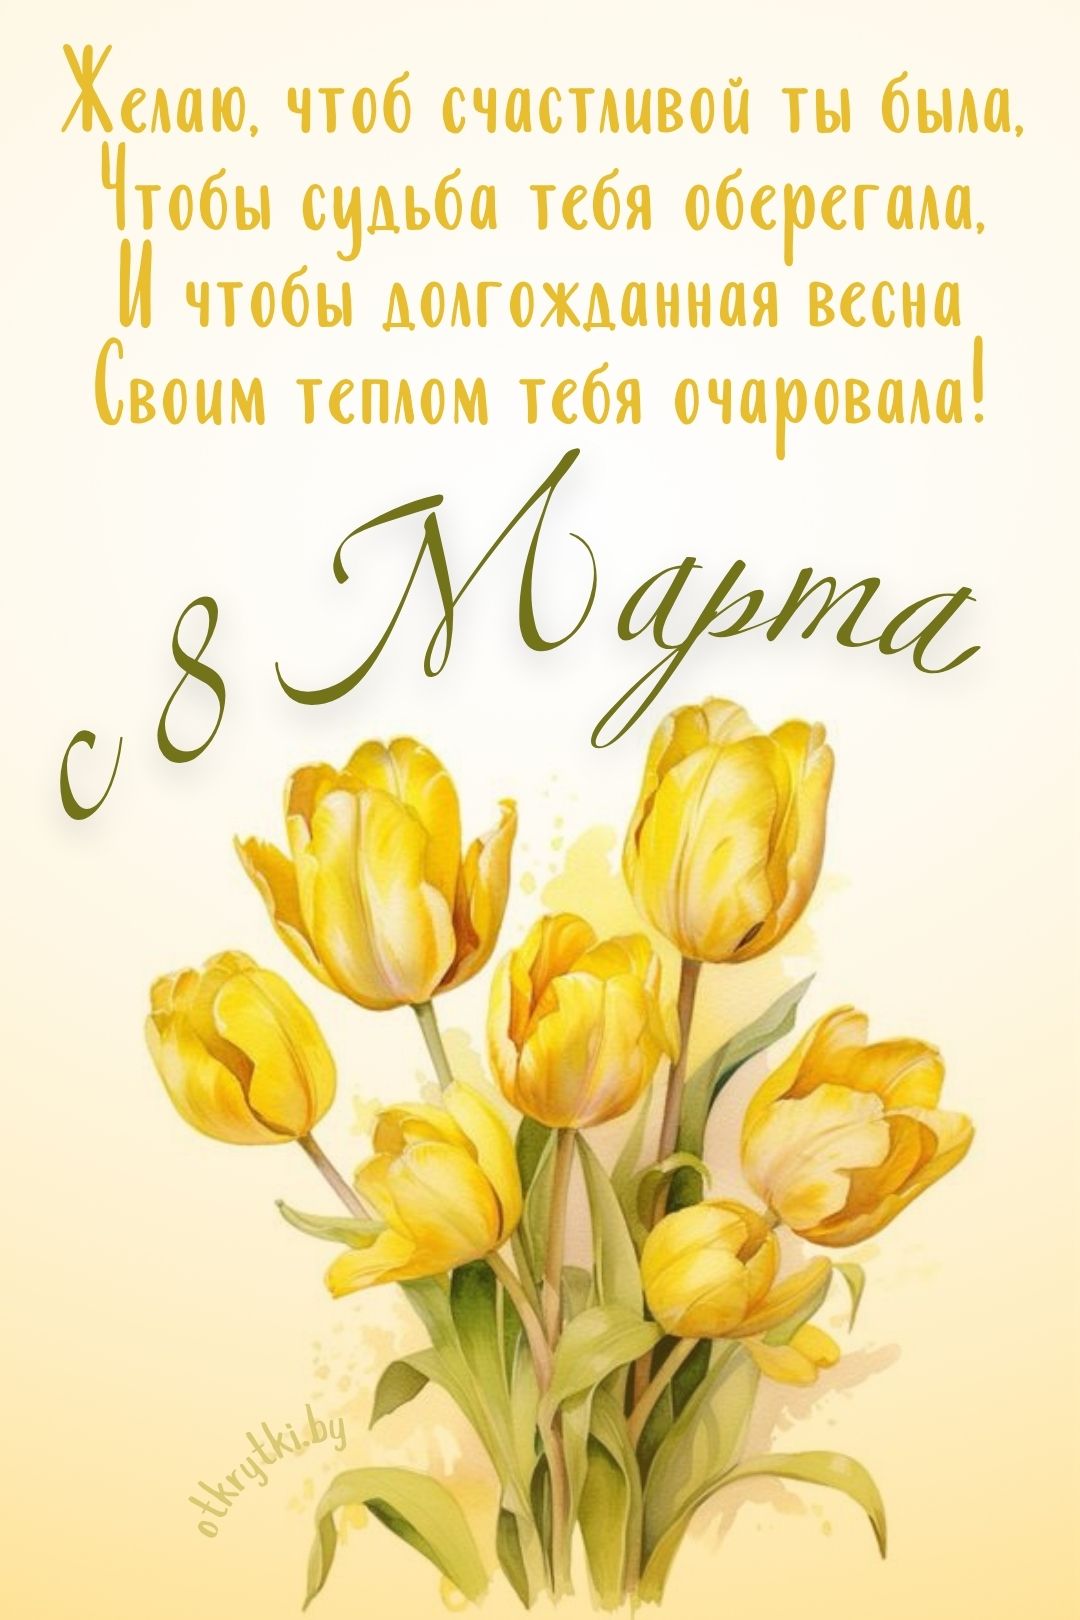 Картинка на 8 марта с желтыми цветами